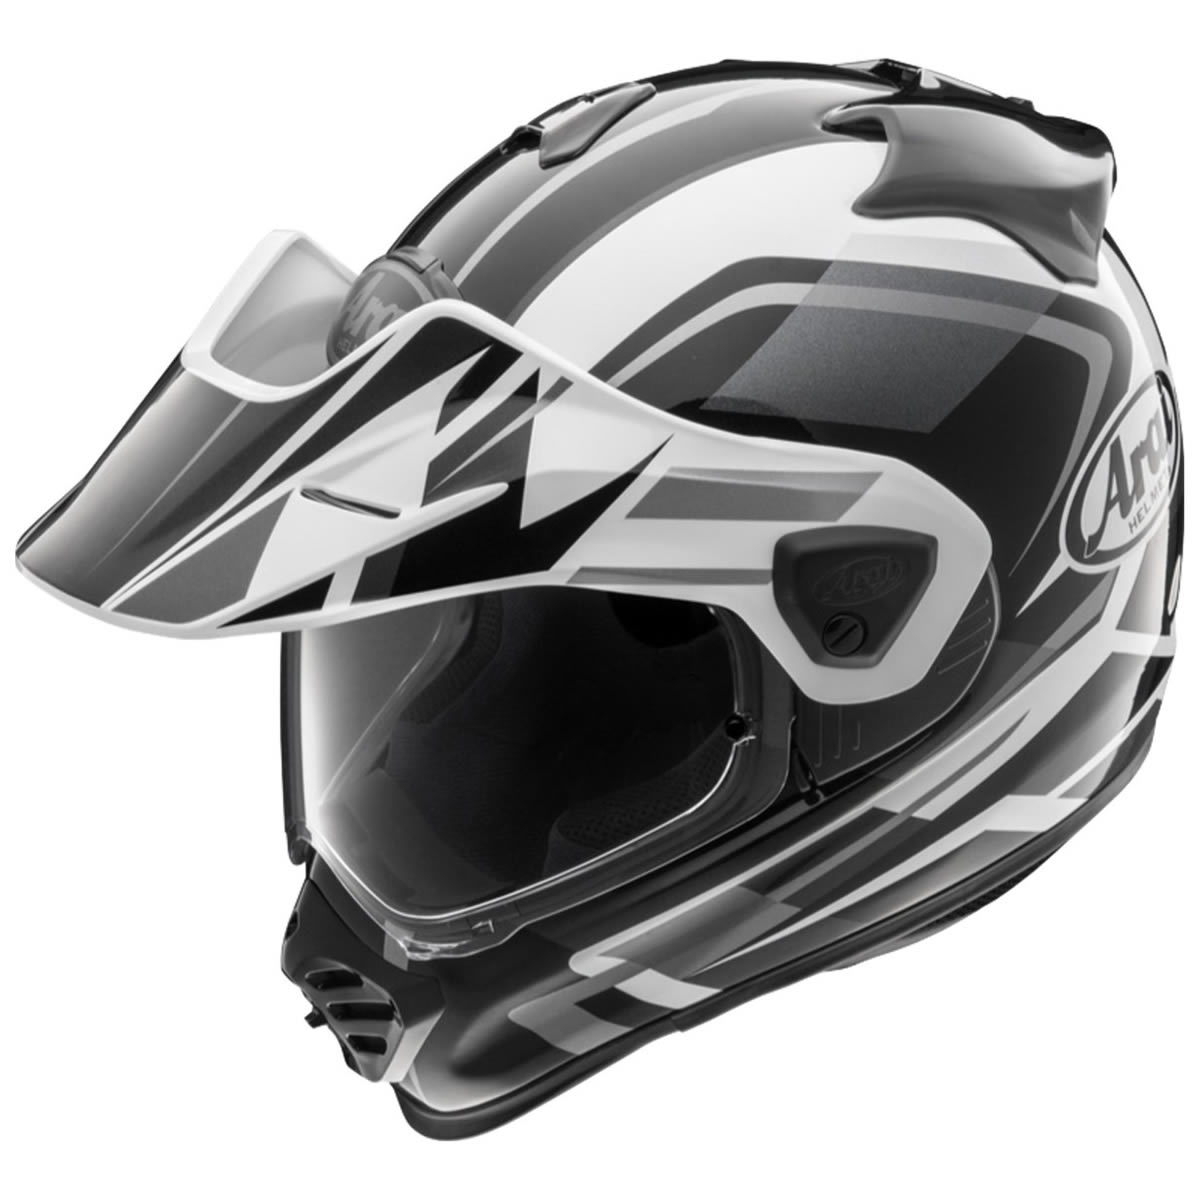 Arai Tour-X5 Discovery White Helm, weiß-grau-schwarz